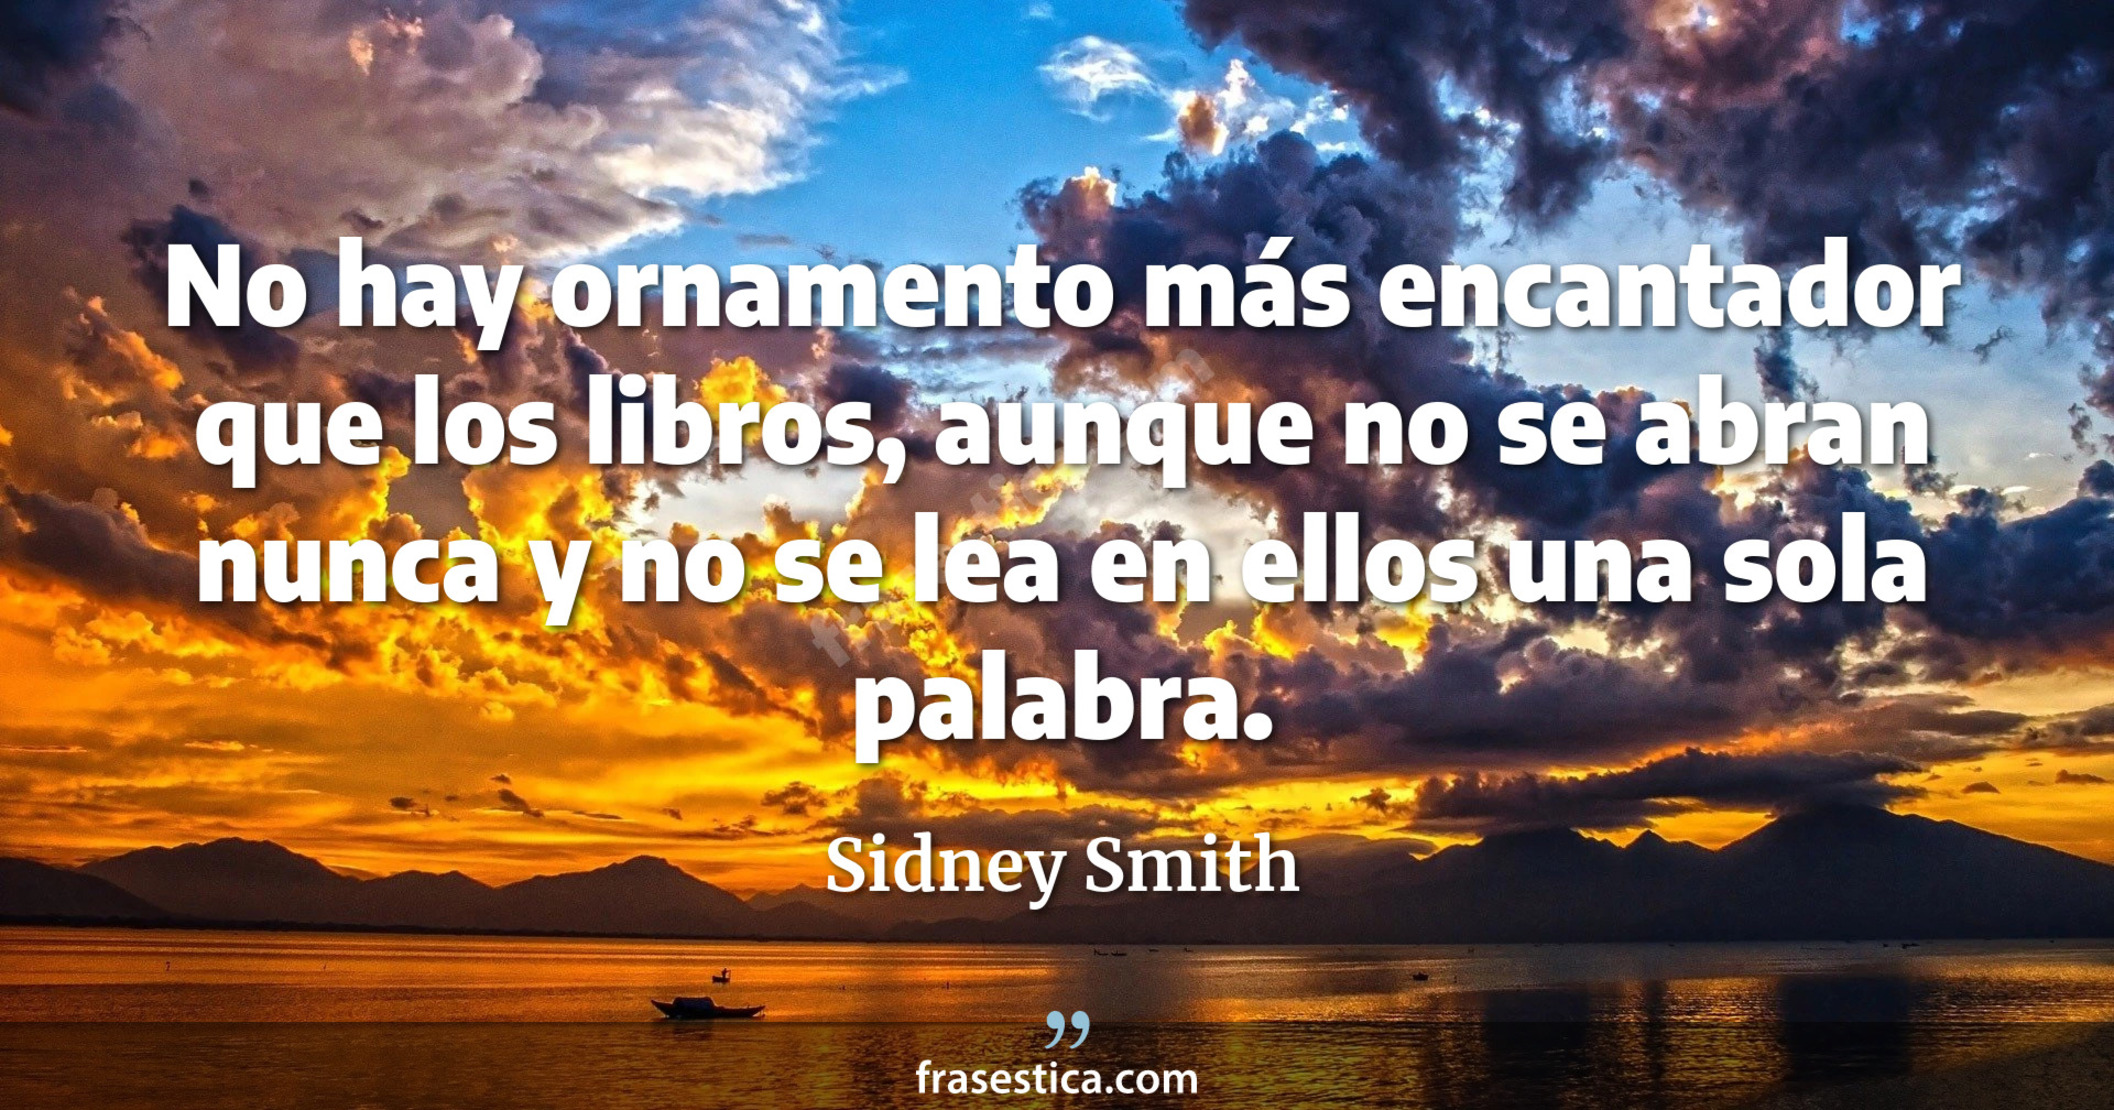 No hay ornamento más encantador que los libros, aunque no se abran nunca y no se lea en ellos una sola palabra. - Sidney Smith